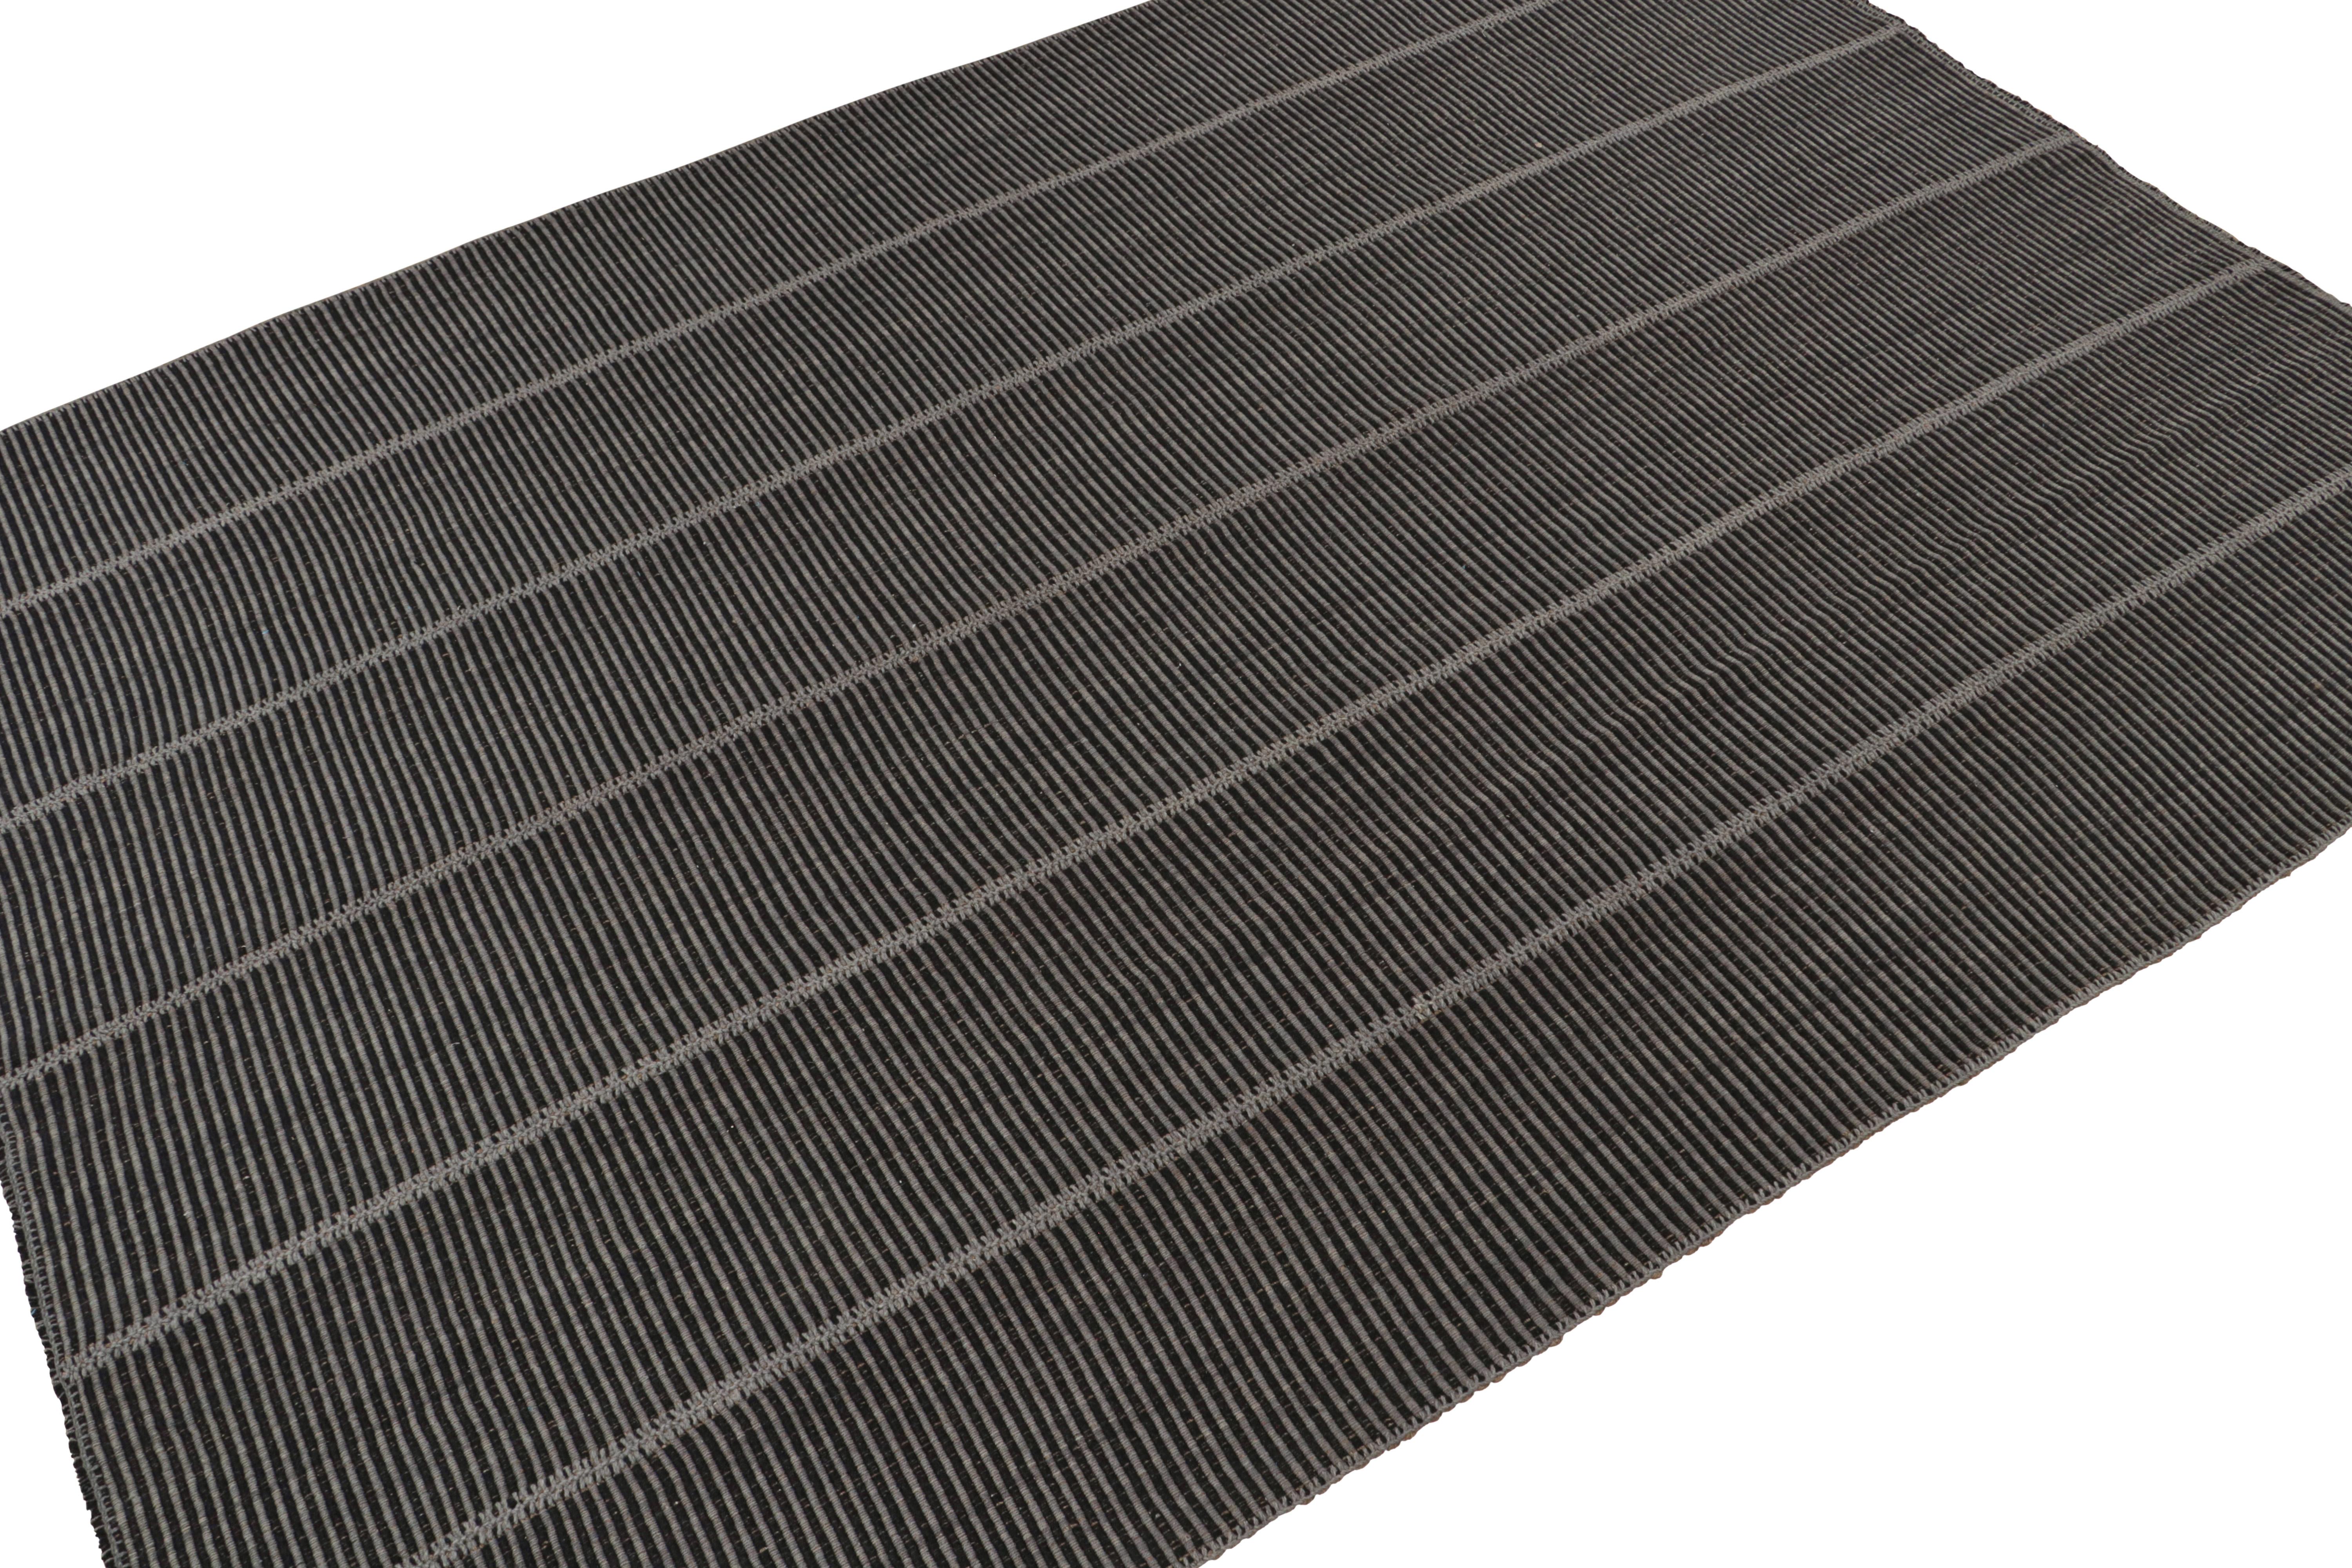 Persian Rug & Kilim’s Contemporary Kilim in Grey & Black Stripes For Sale